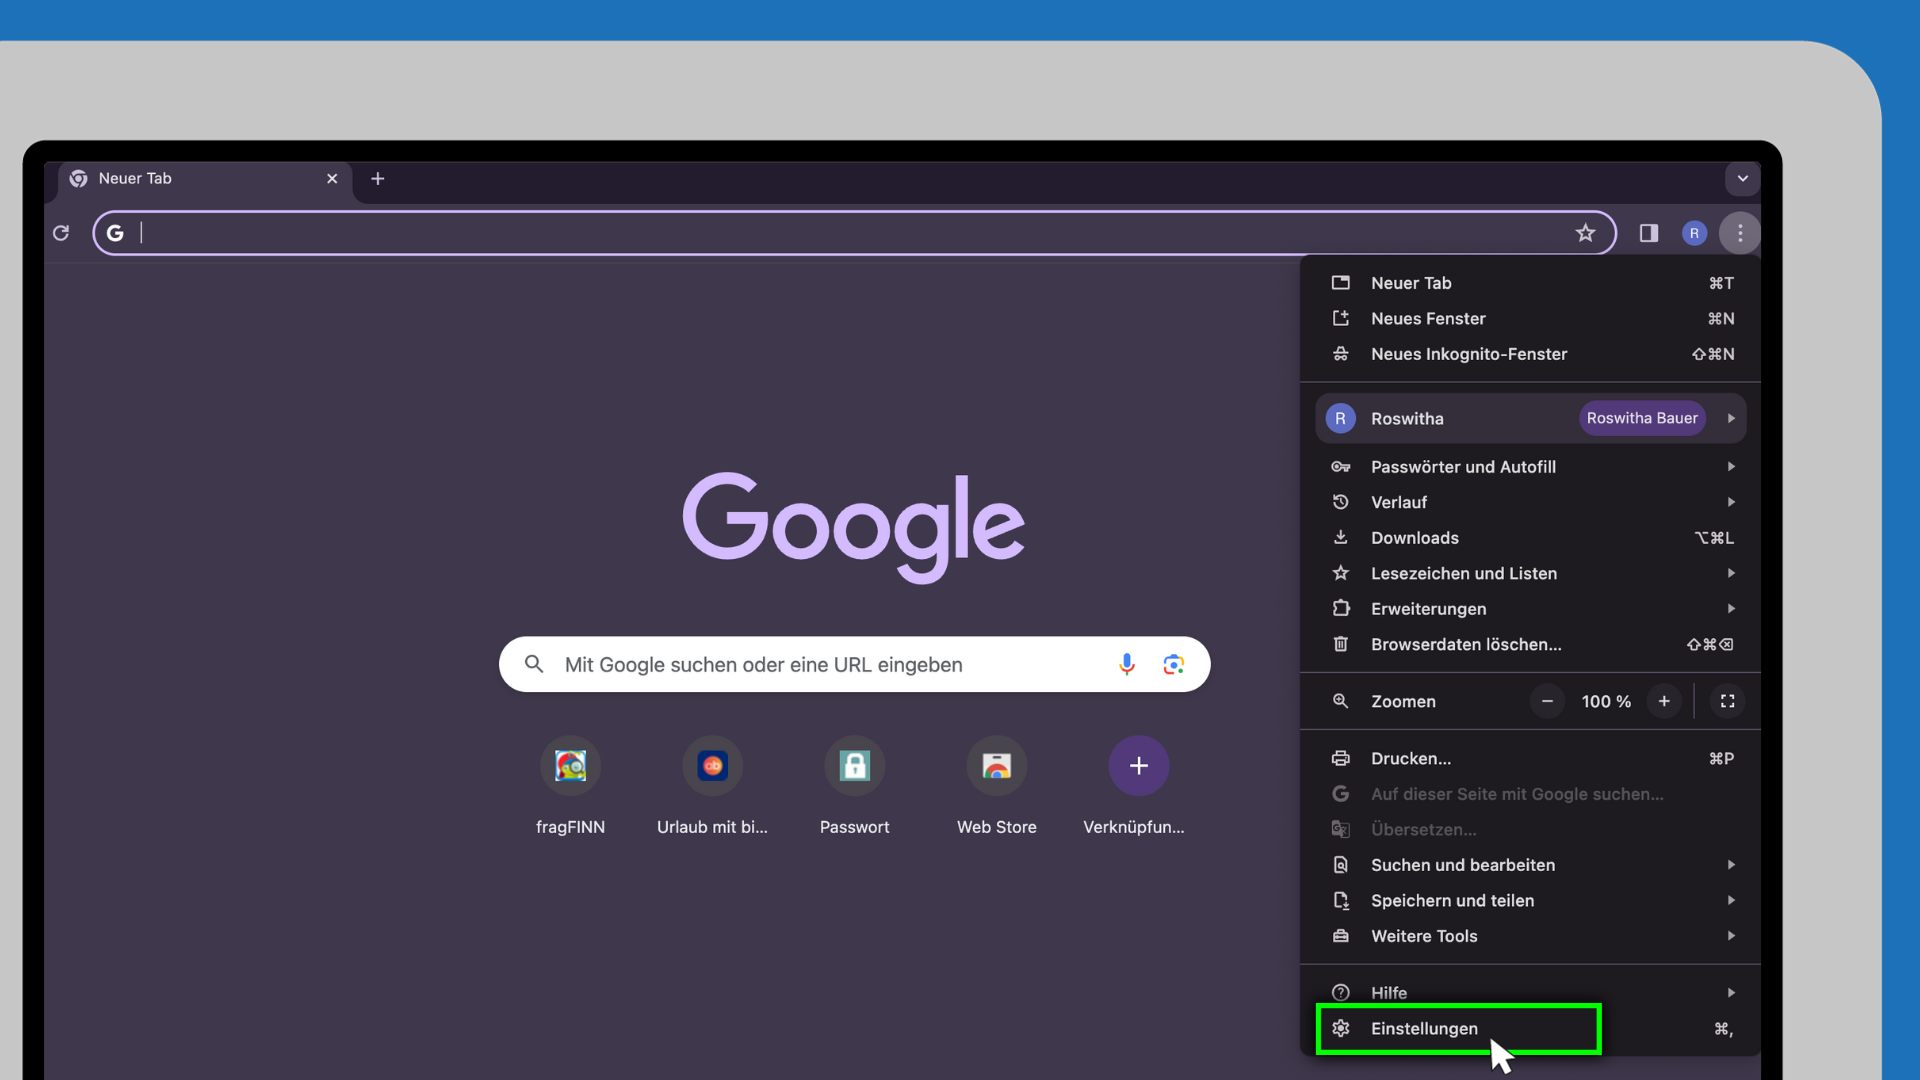 Die vergrößerte Ecke eines Computerbildschirms wird angezeigt. Darauf ist das geöffnete Menü des Chrome-Browsers zu sehen. Der Menüpunkt "Einstellungen" ist ausgewählt.